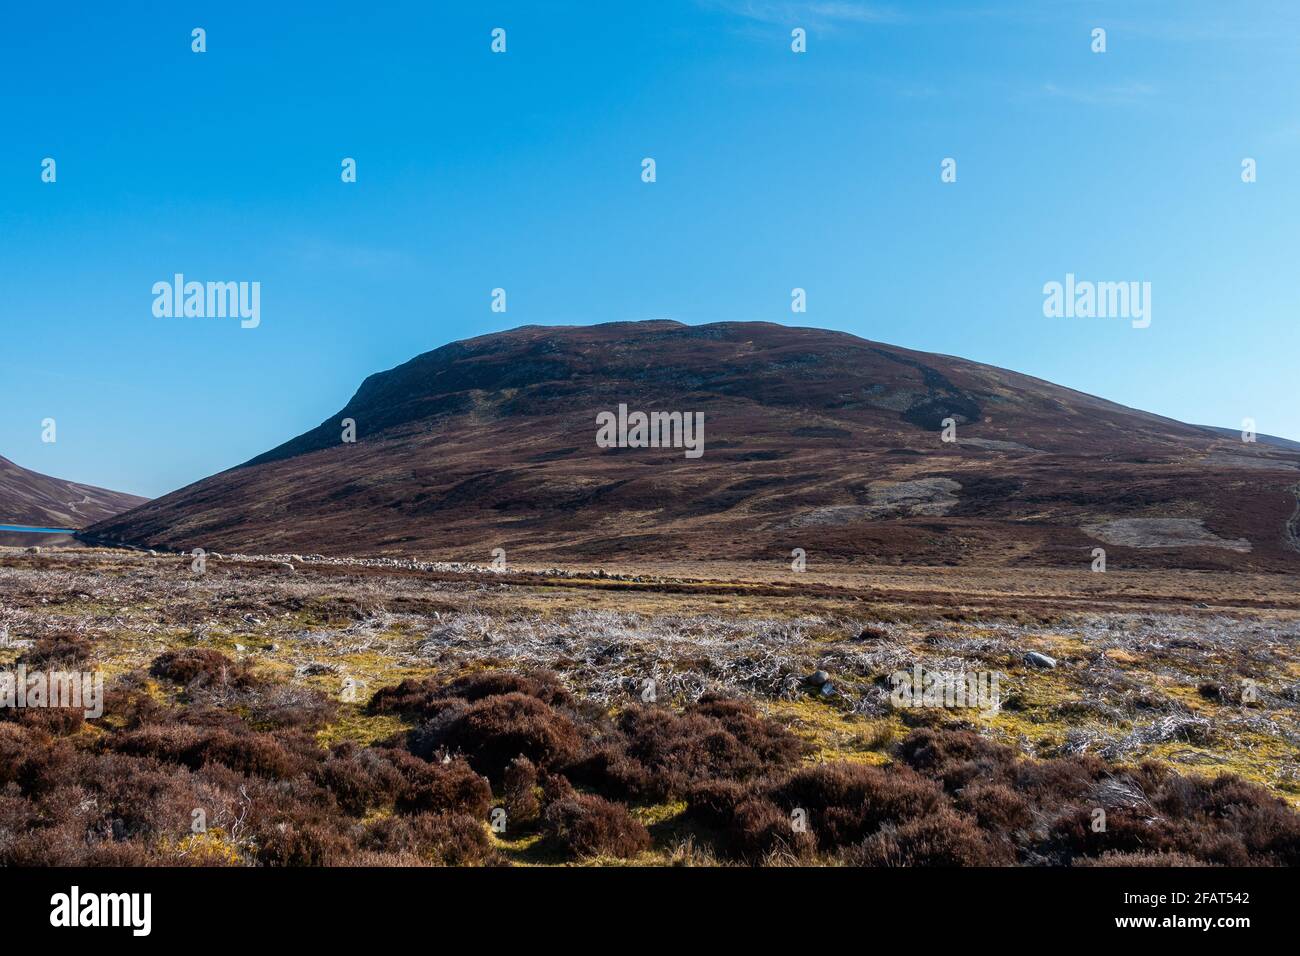 Meall Chuaich, a Munro mountain near Dalwhinnie, Scotland Stock Photo